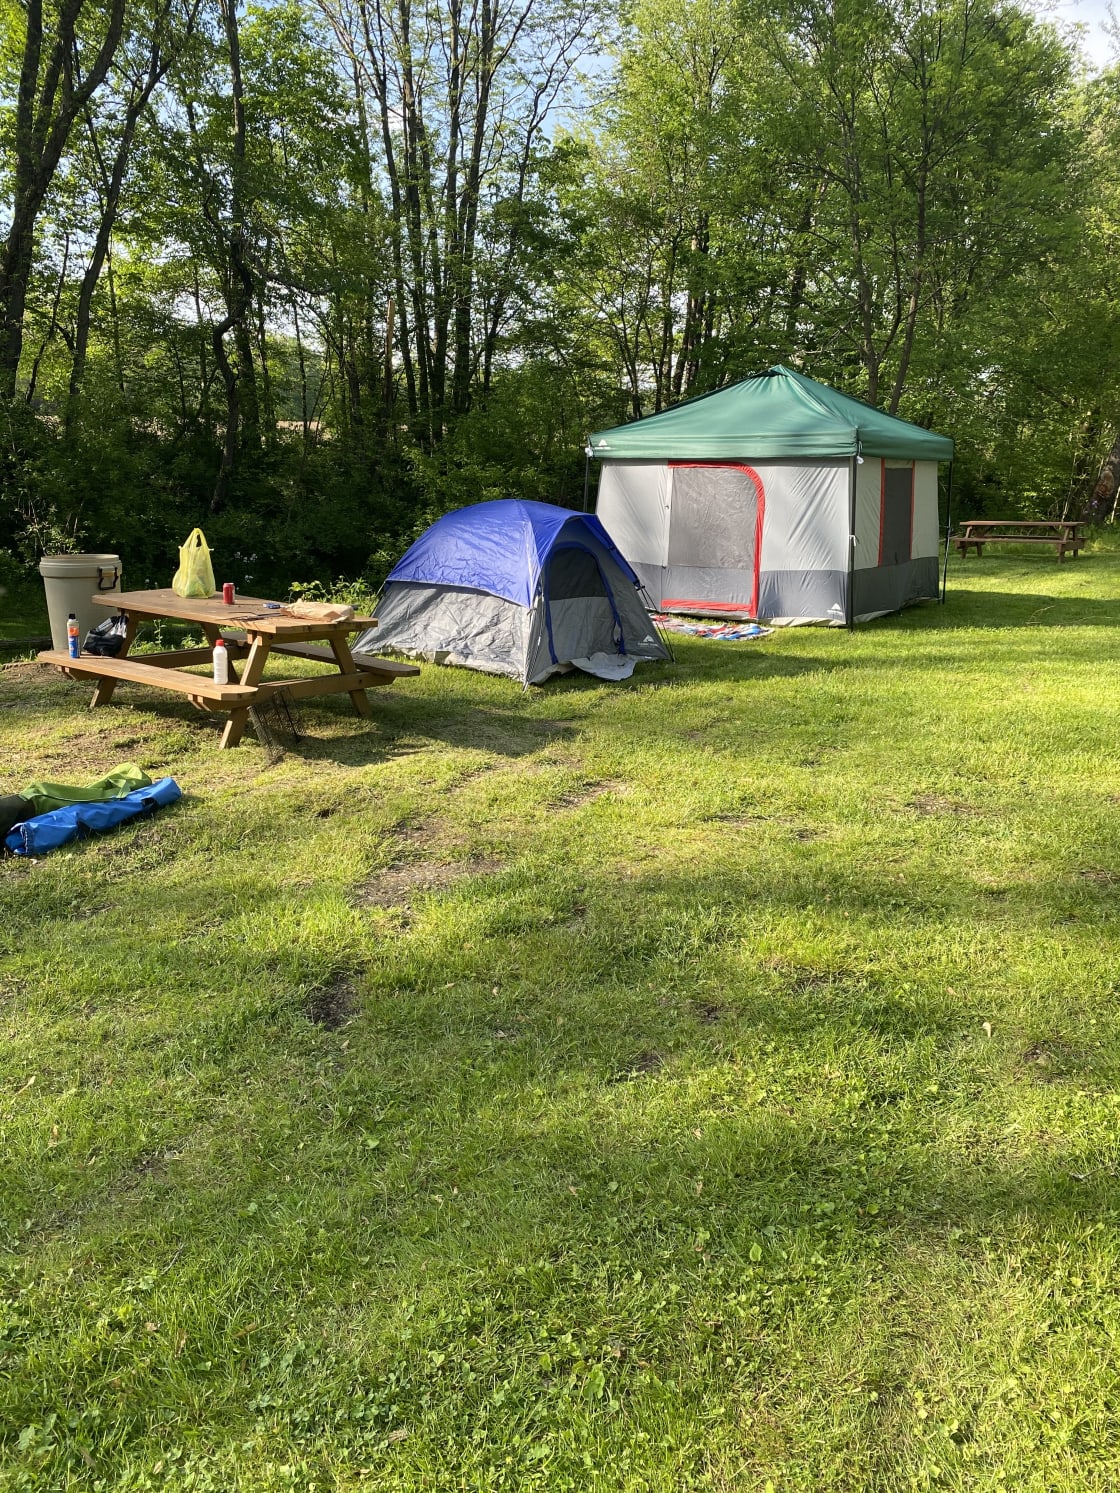 Our campsite!!